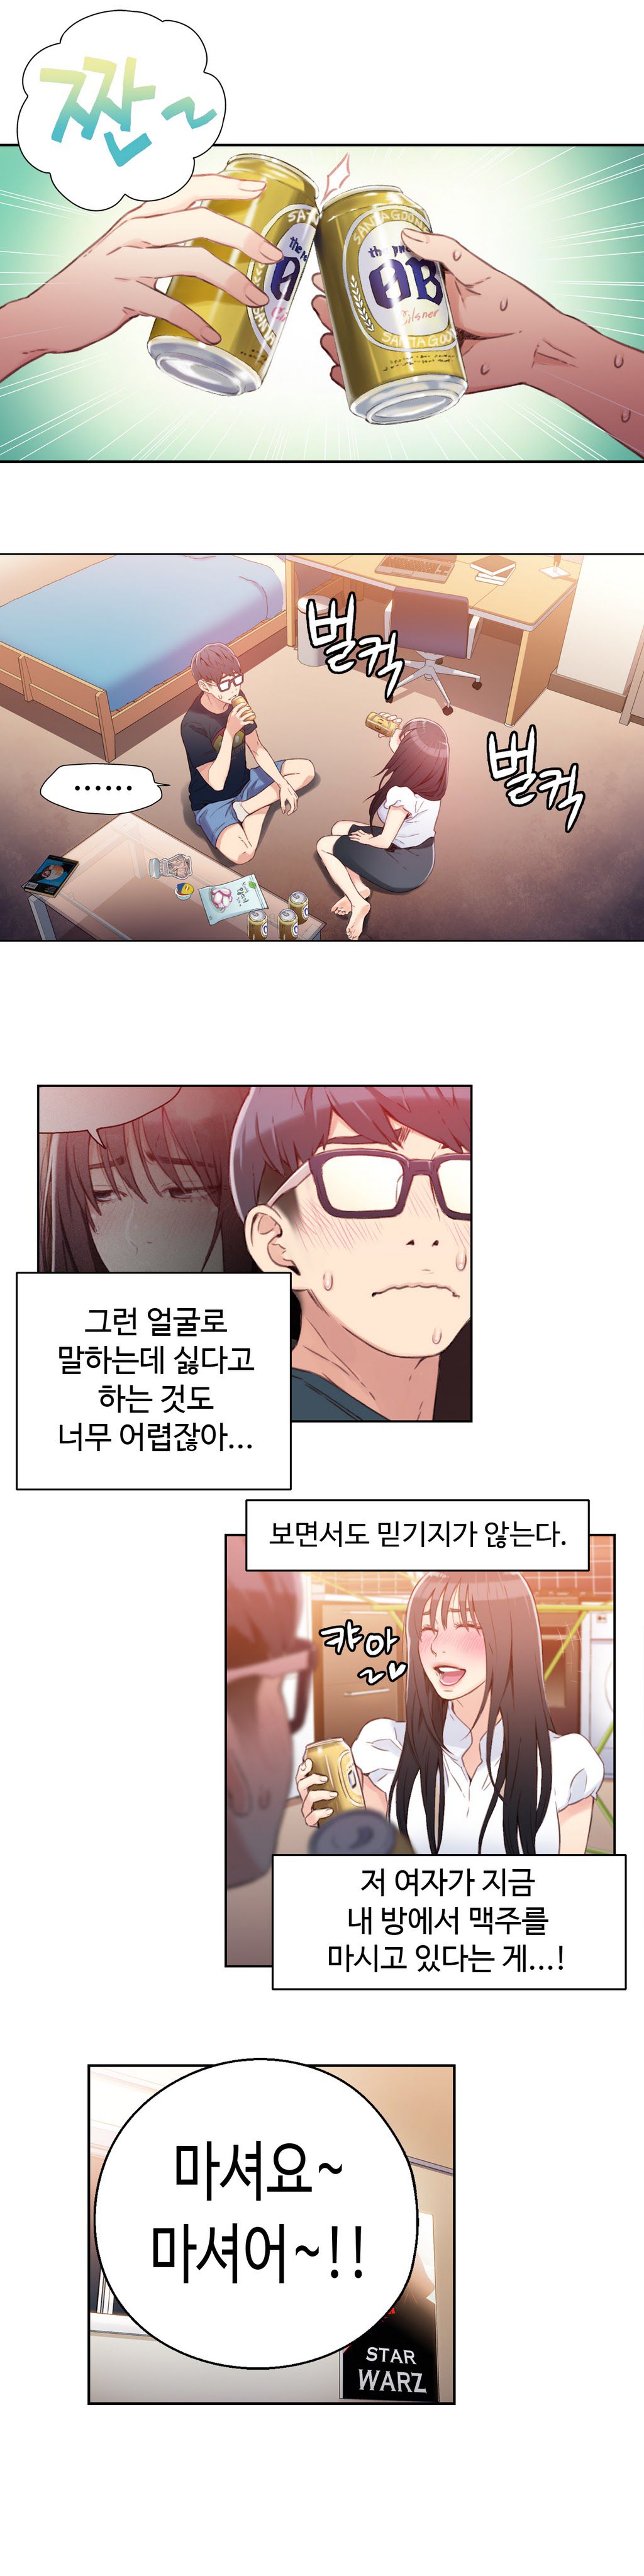 Sweet Guy Chapter 18 [Korean] (Full Color) Lezhin Comics 2wonsik2 5